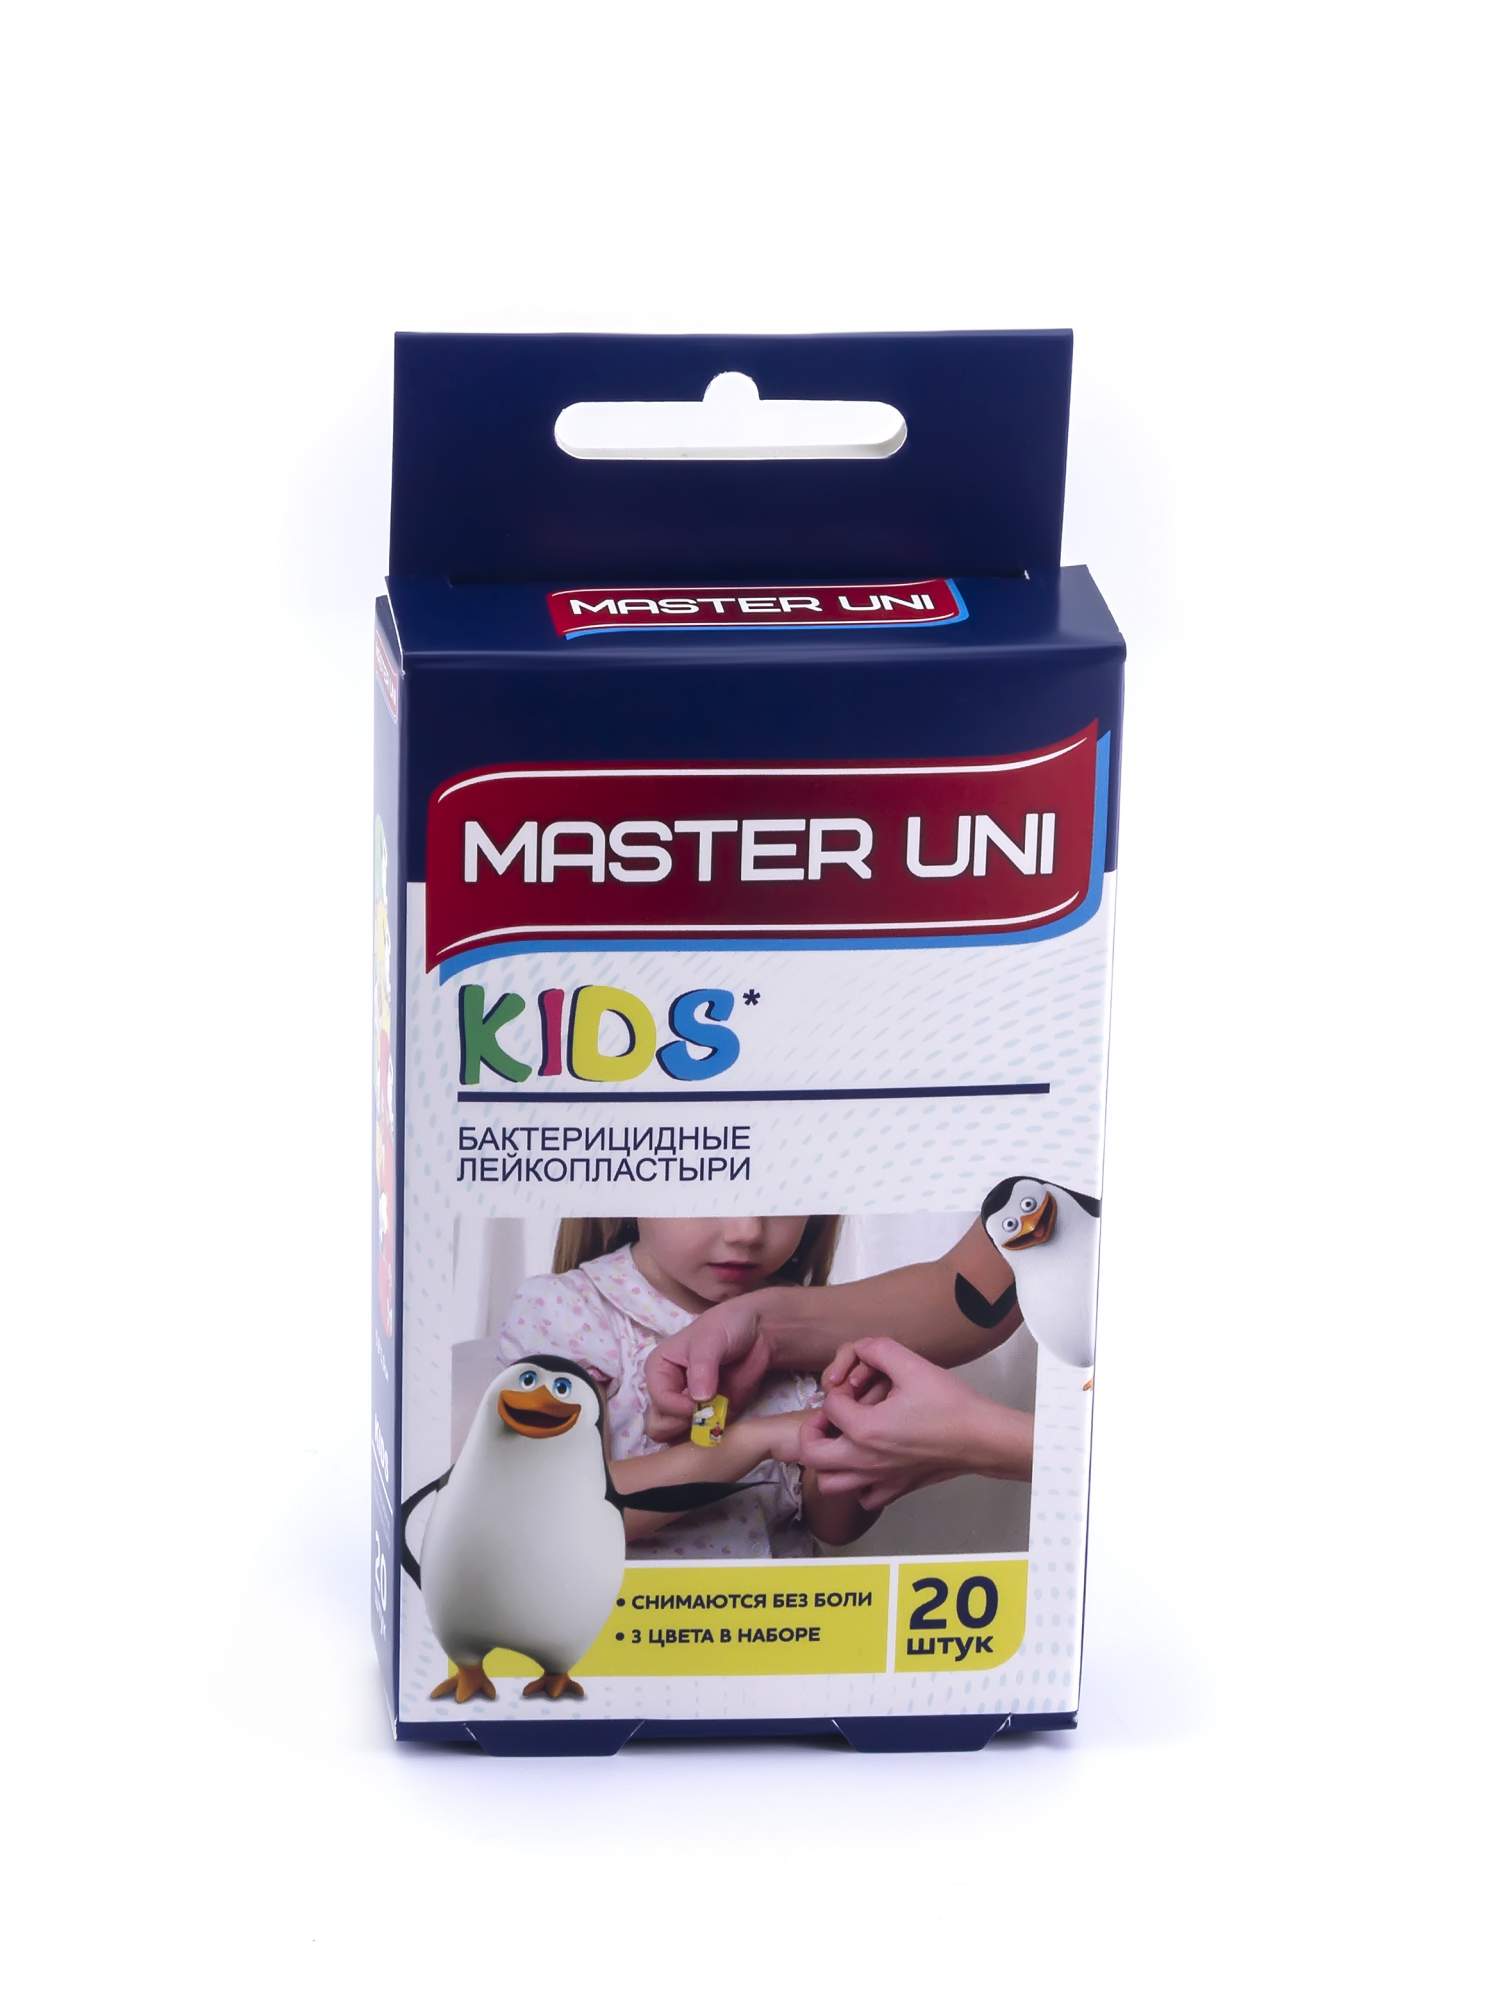 Пластырь Master Uni Kids бактерицидный детский 20 шт. - купить в Мегамаркет Спб, цена на Мегамаркет